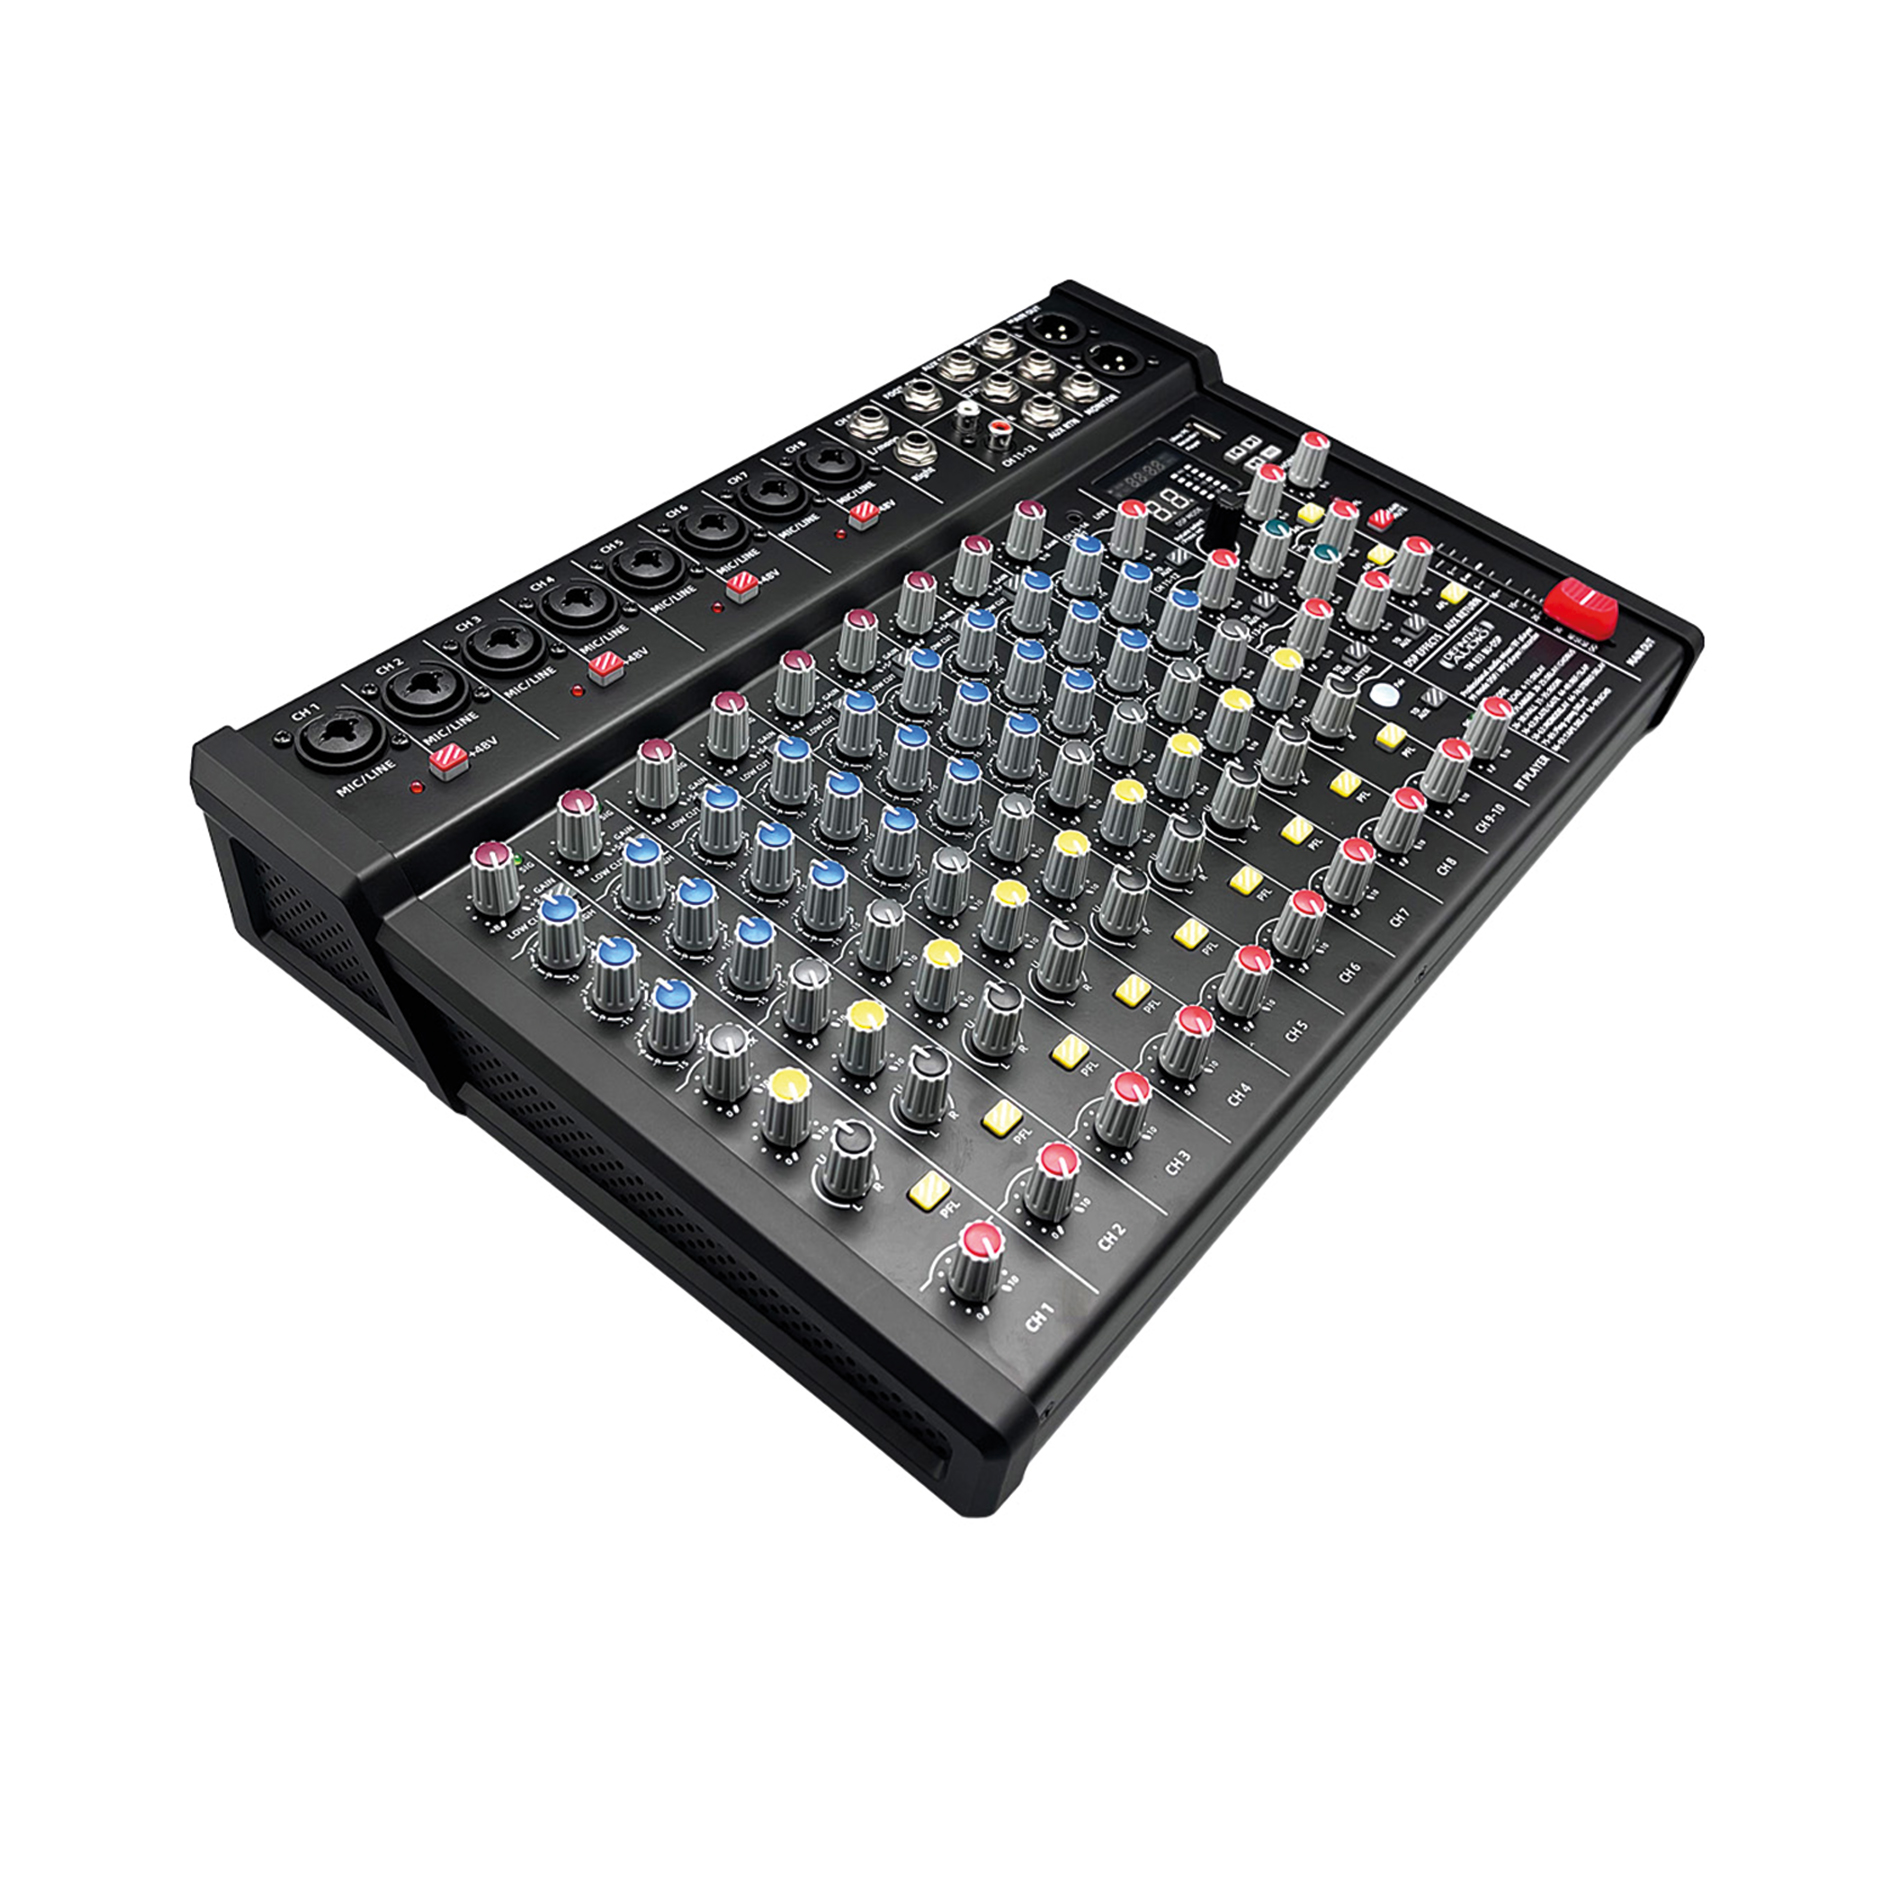 Definitive Audio Tm 833 Bu-dsp - Table De Mixage Analogique - Variation 2